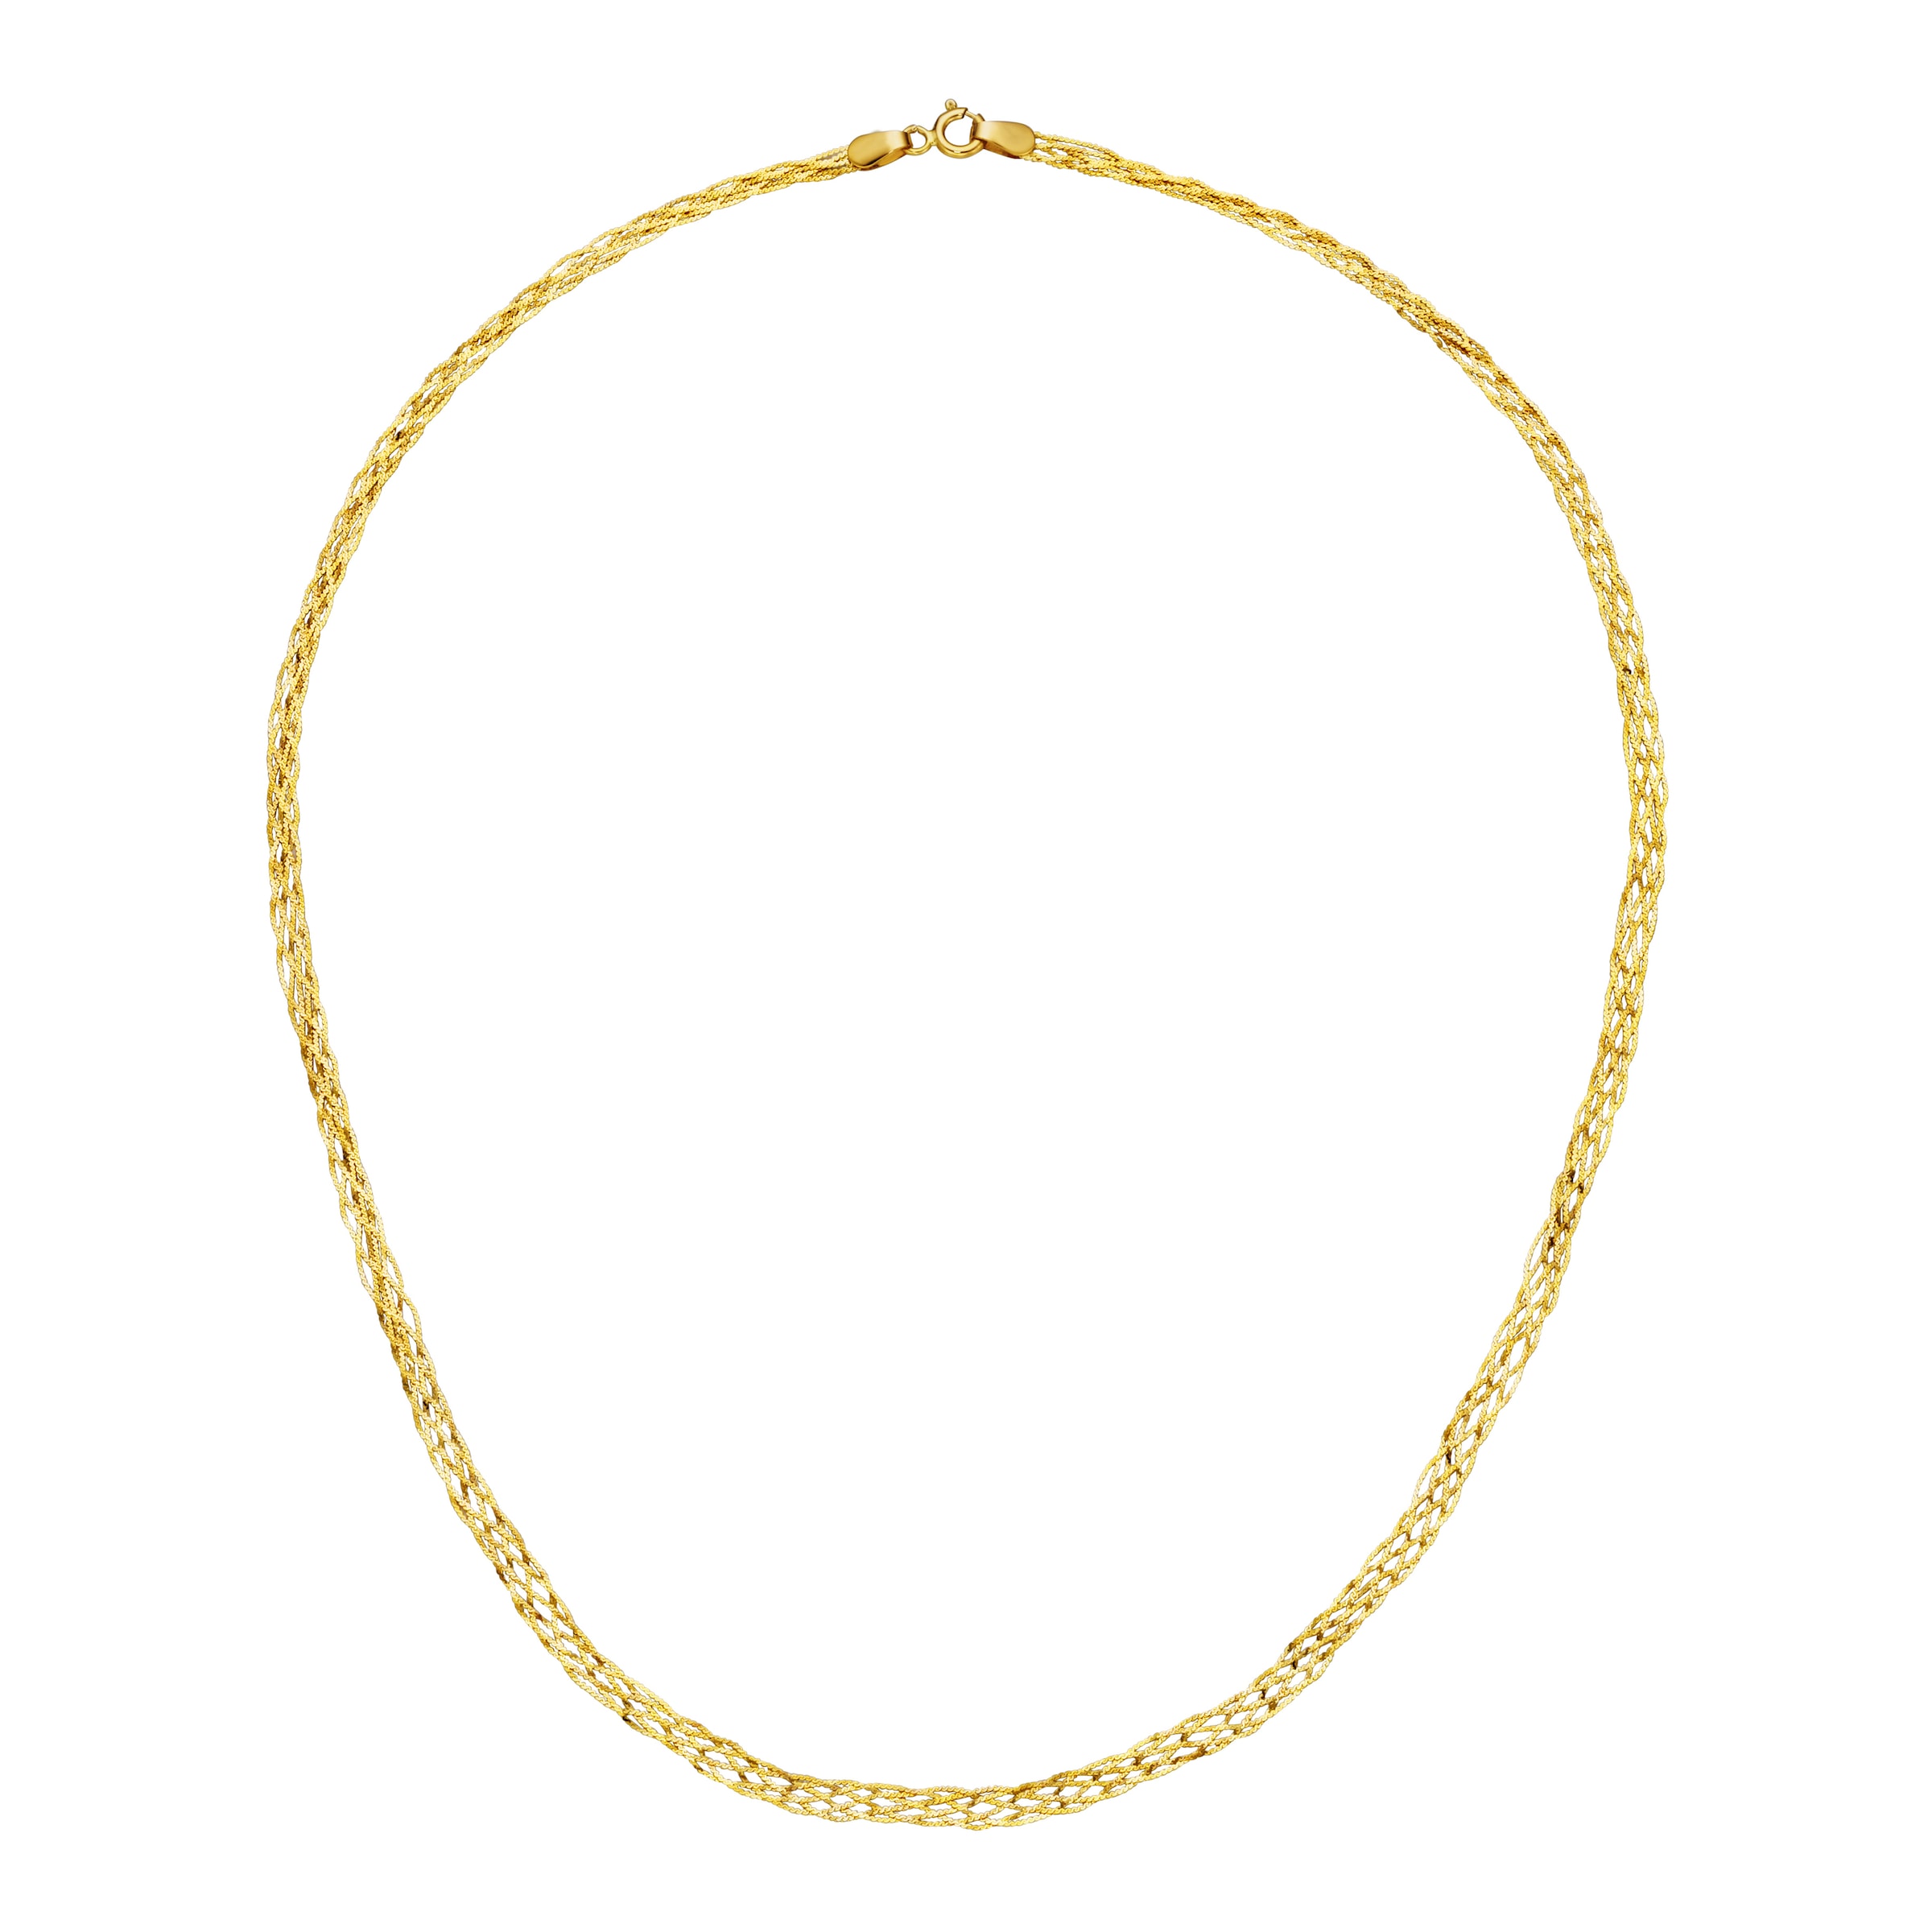 Goldkette Fantasiekette, geflochtene »Kette Merano 585« Luigi kaufen | UNIVERSAL Gold